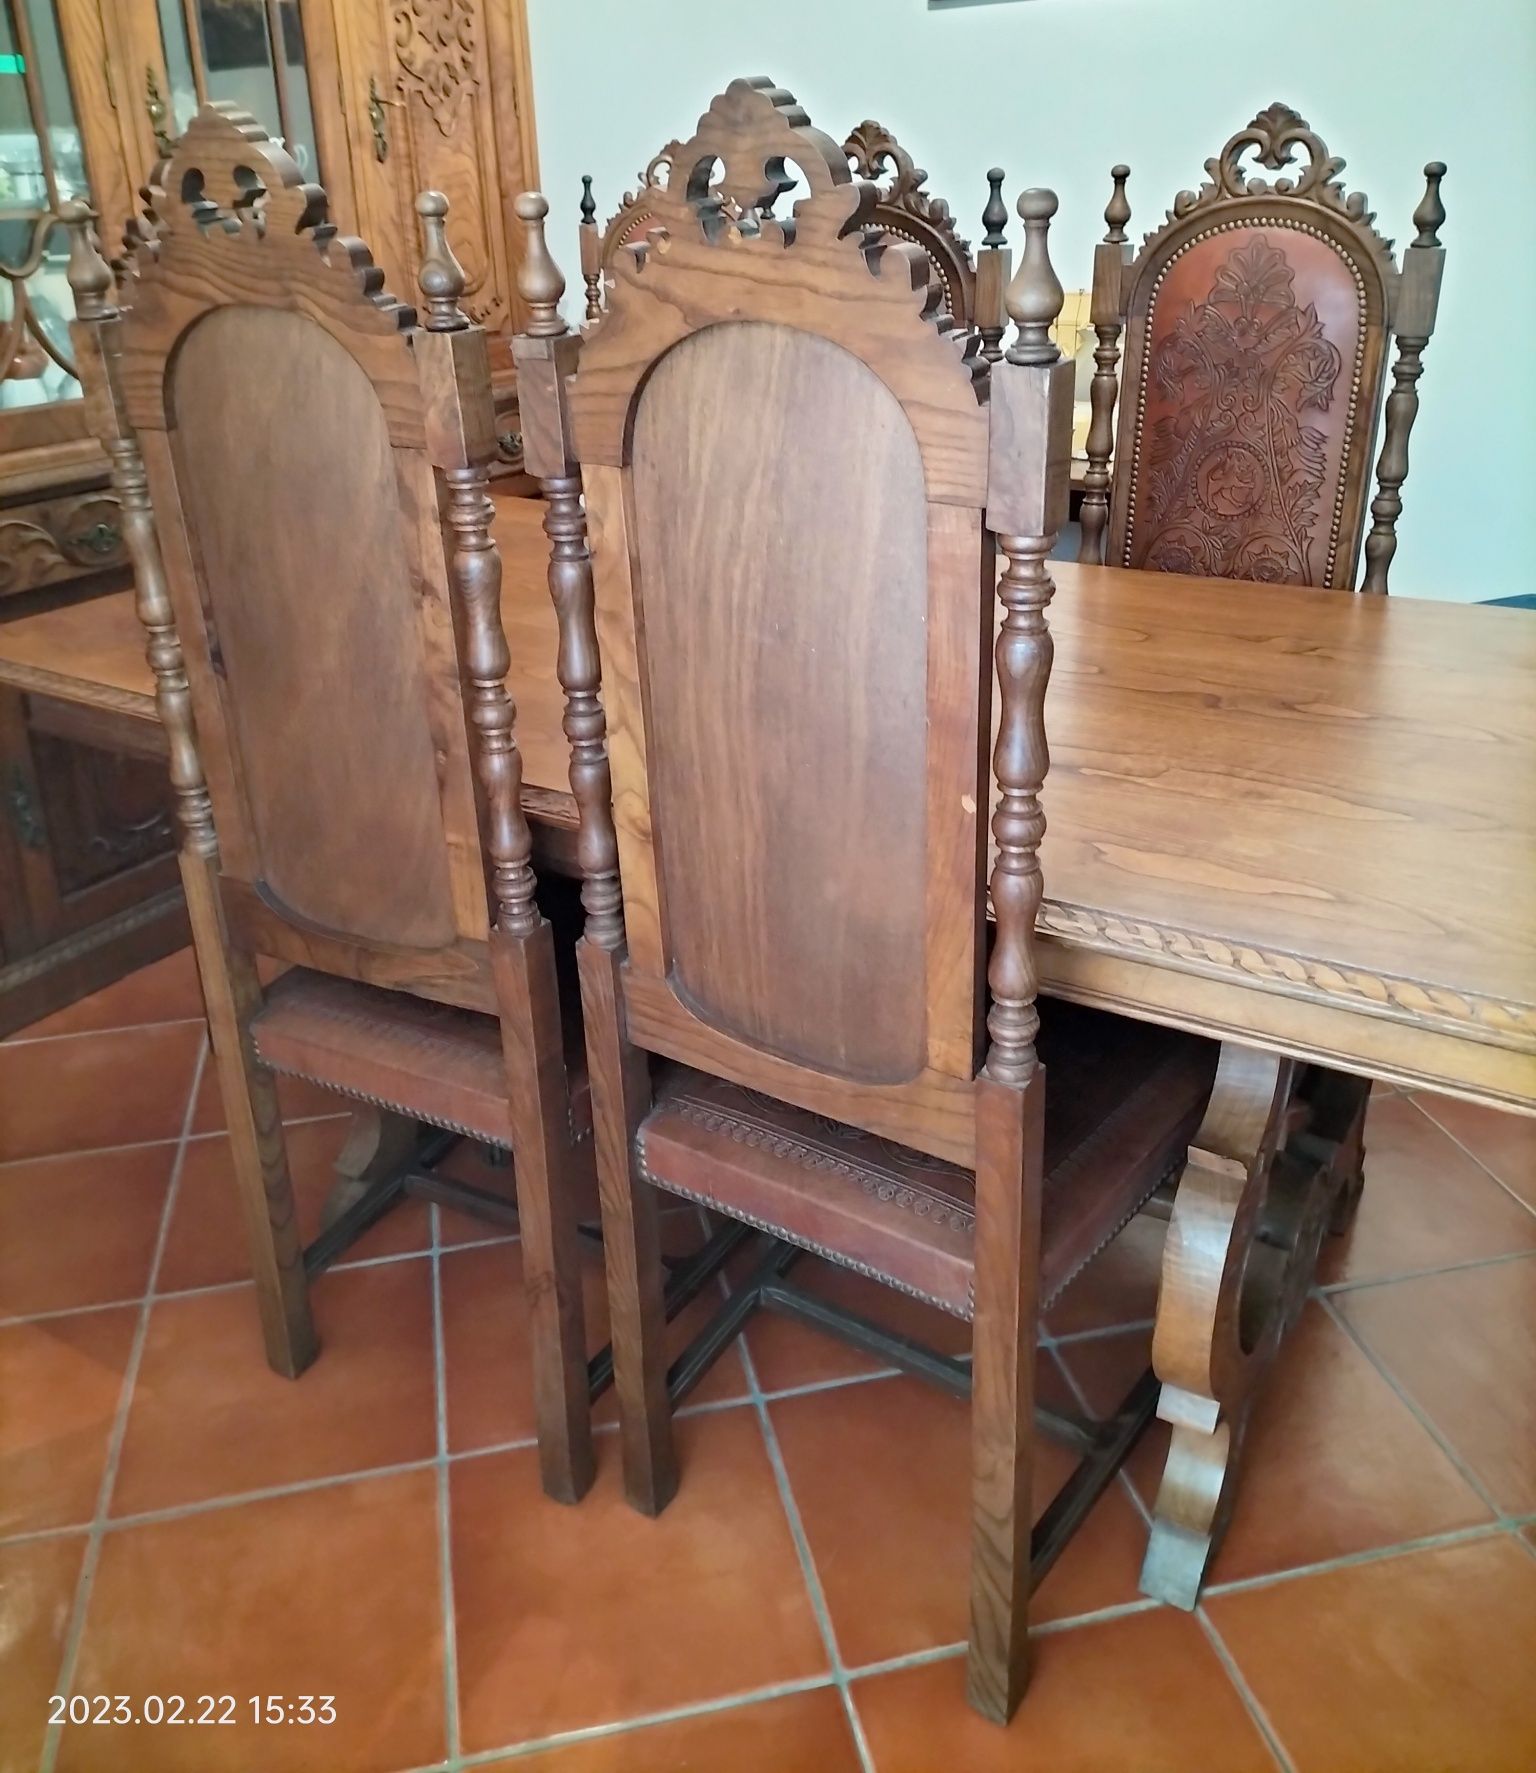 Mesa e cadeiras em madeira de nogueira maciça, forradas a couro.